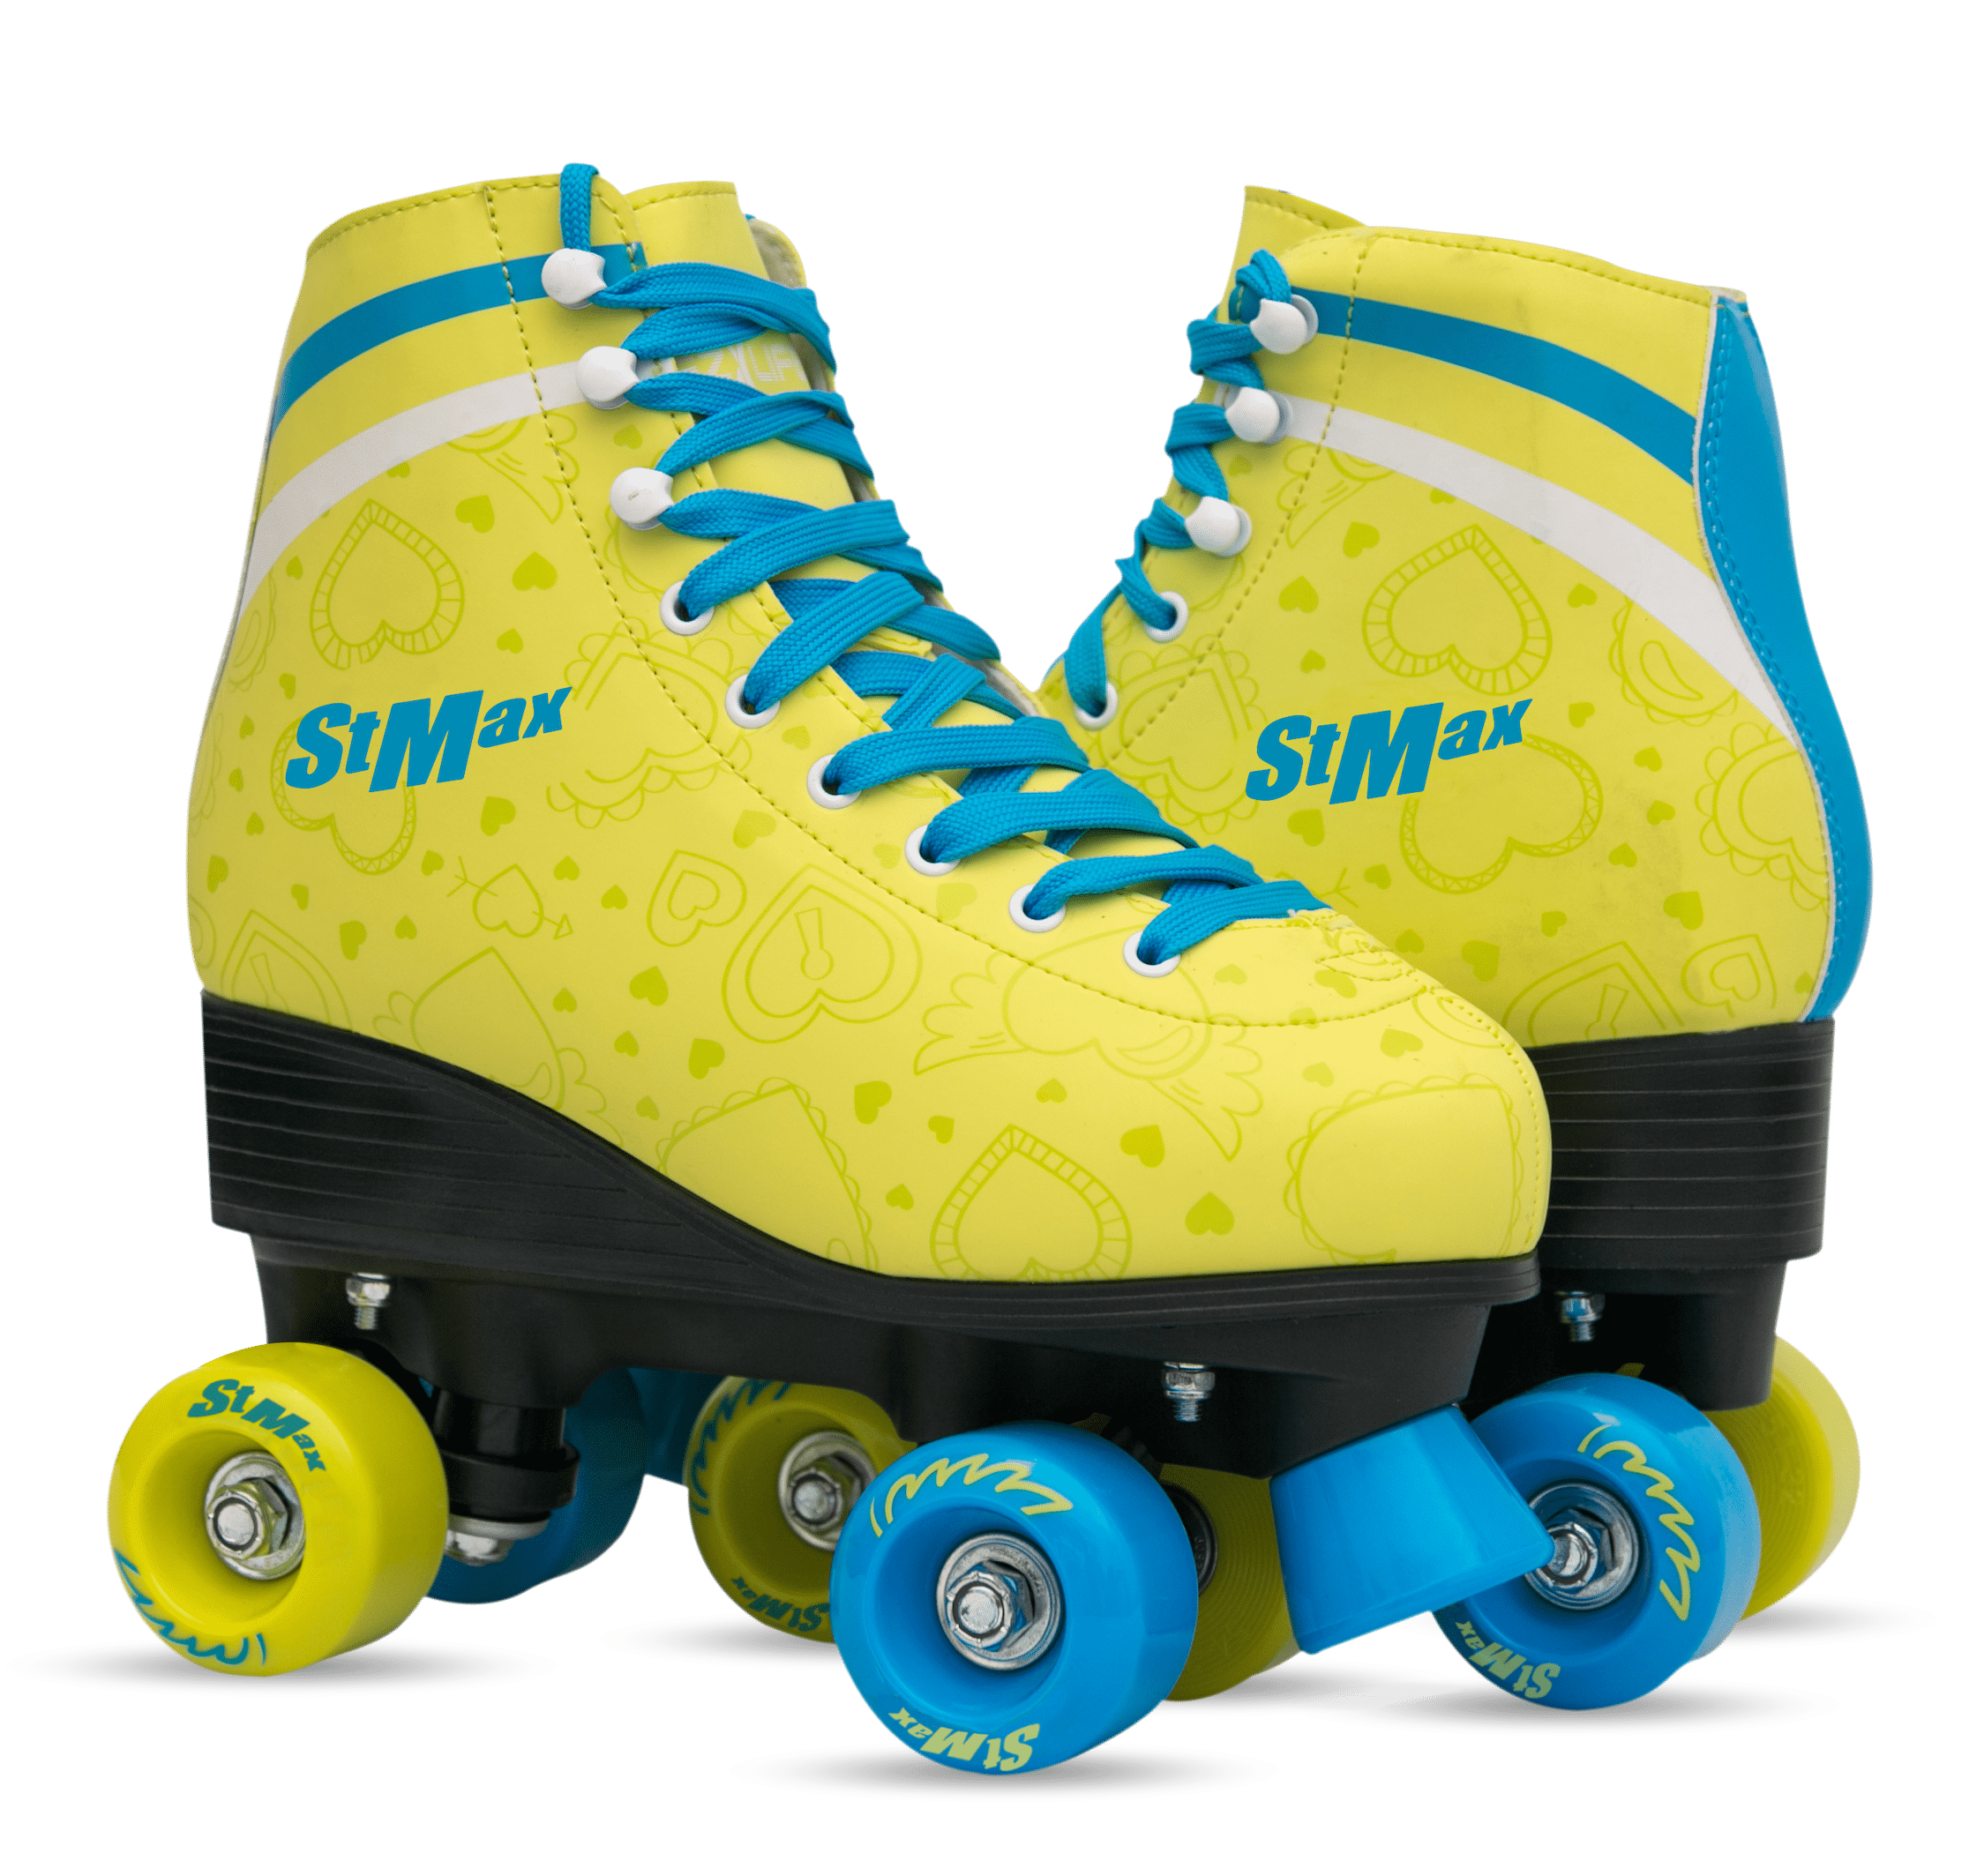 Roller Skates for Women Women's Classic Roller Skates Premium PU Leather Rink Skates for Unisex Girls Boys 